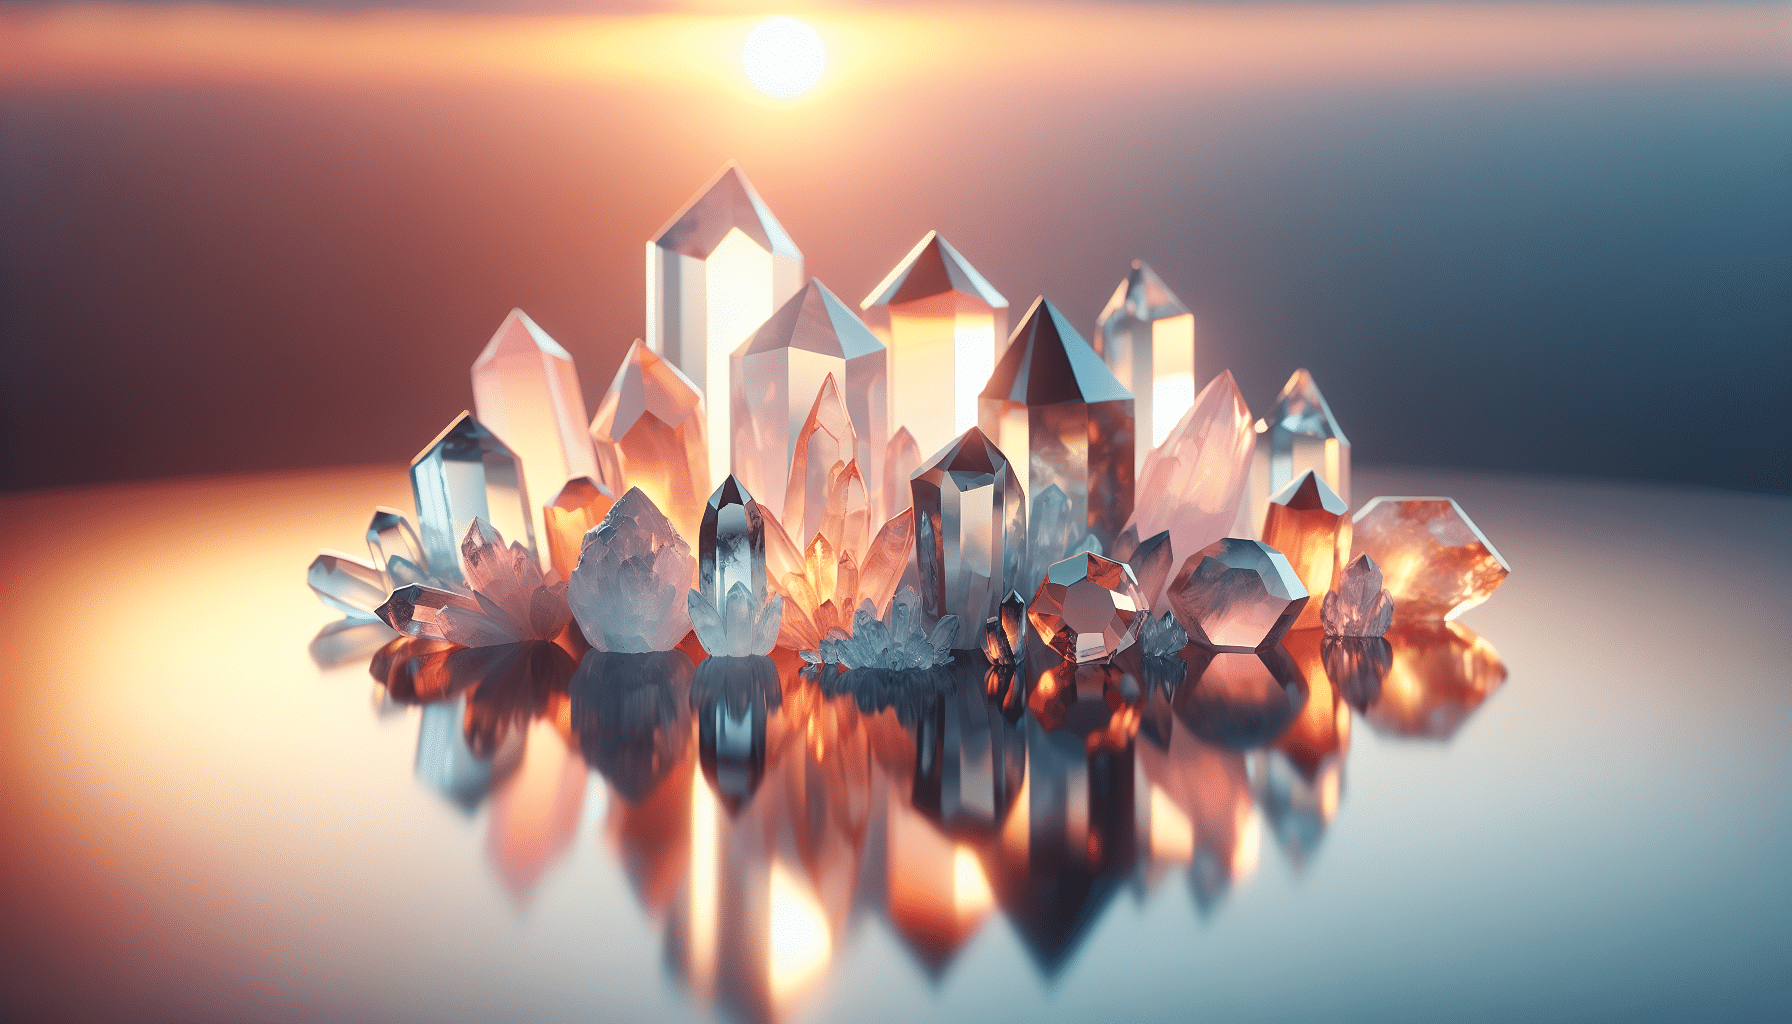 Hur fungerar kristaller